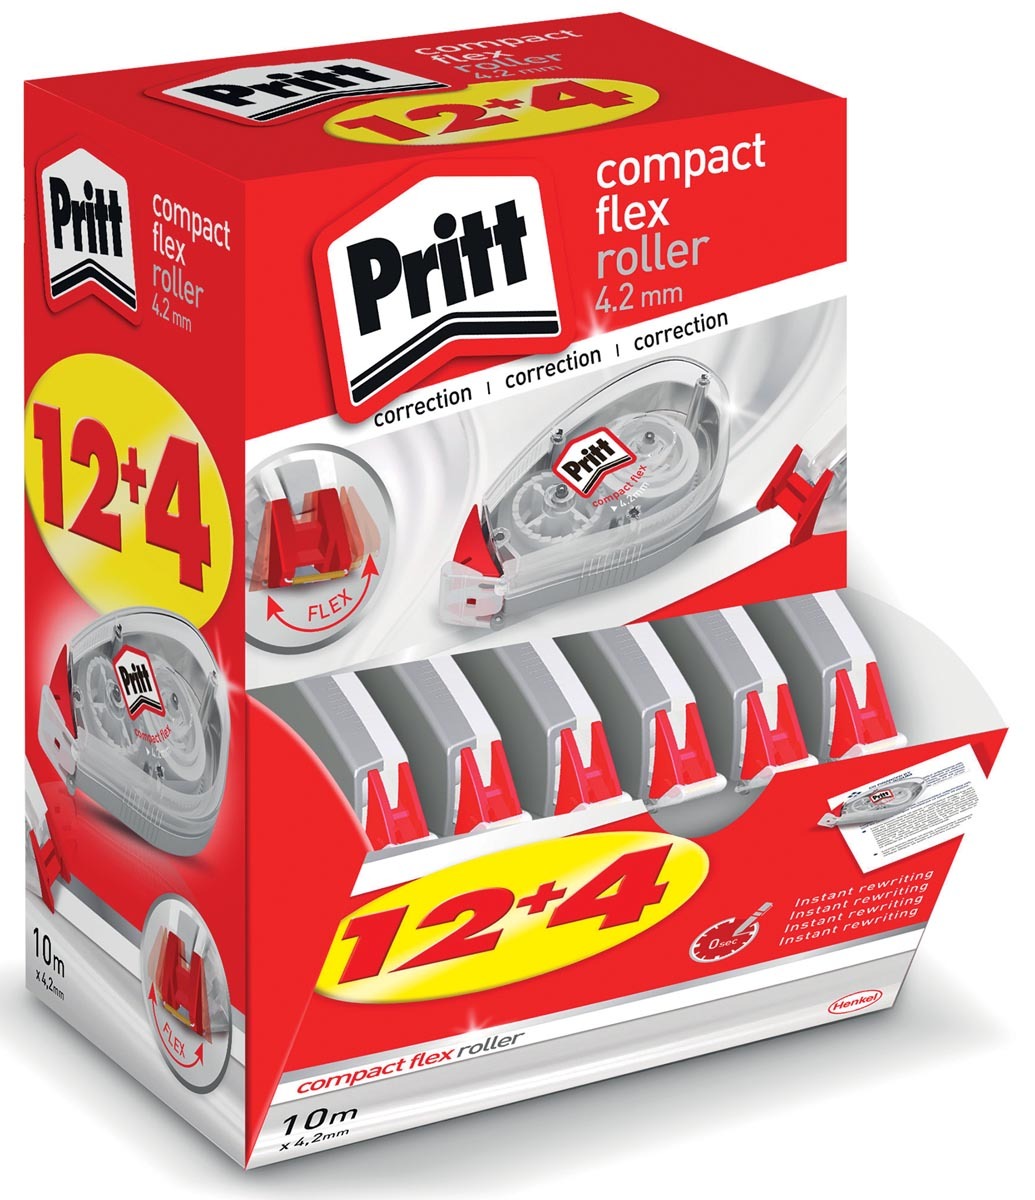 Pritt correctieroller Compact Flex 4 2 mm x 10 m doos 12 4 gratis